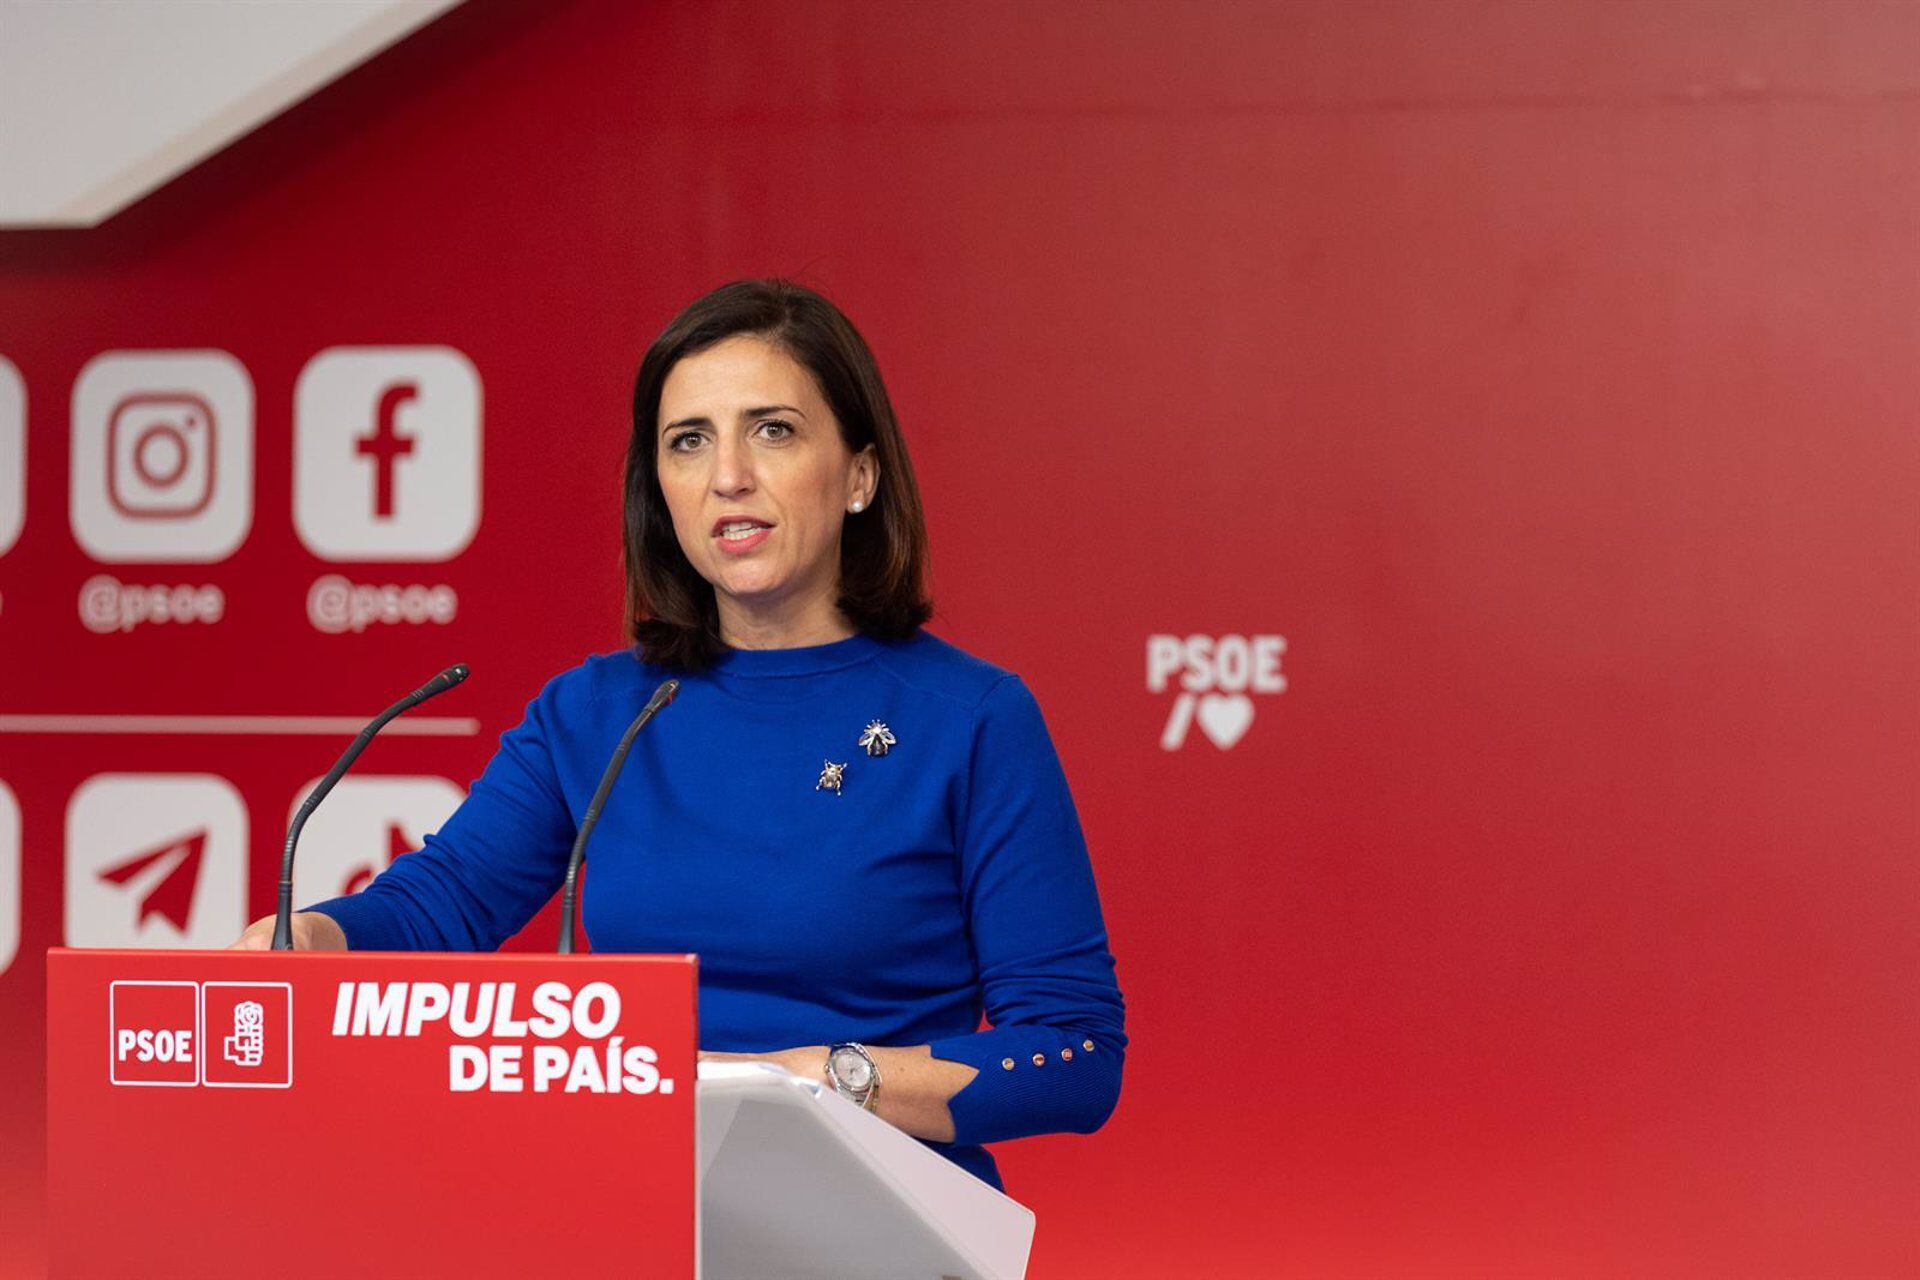 La portavoz de la Comisión Ejecutiva Federal del PSOE, Esther Peña, en una comparecencia en la sede del partido en la calle Ferraz. (PSOE)